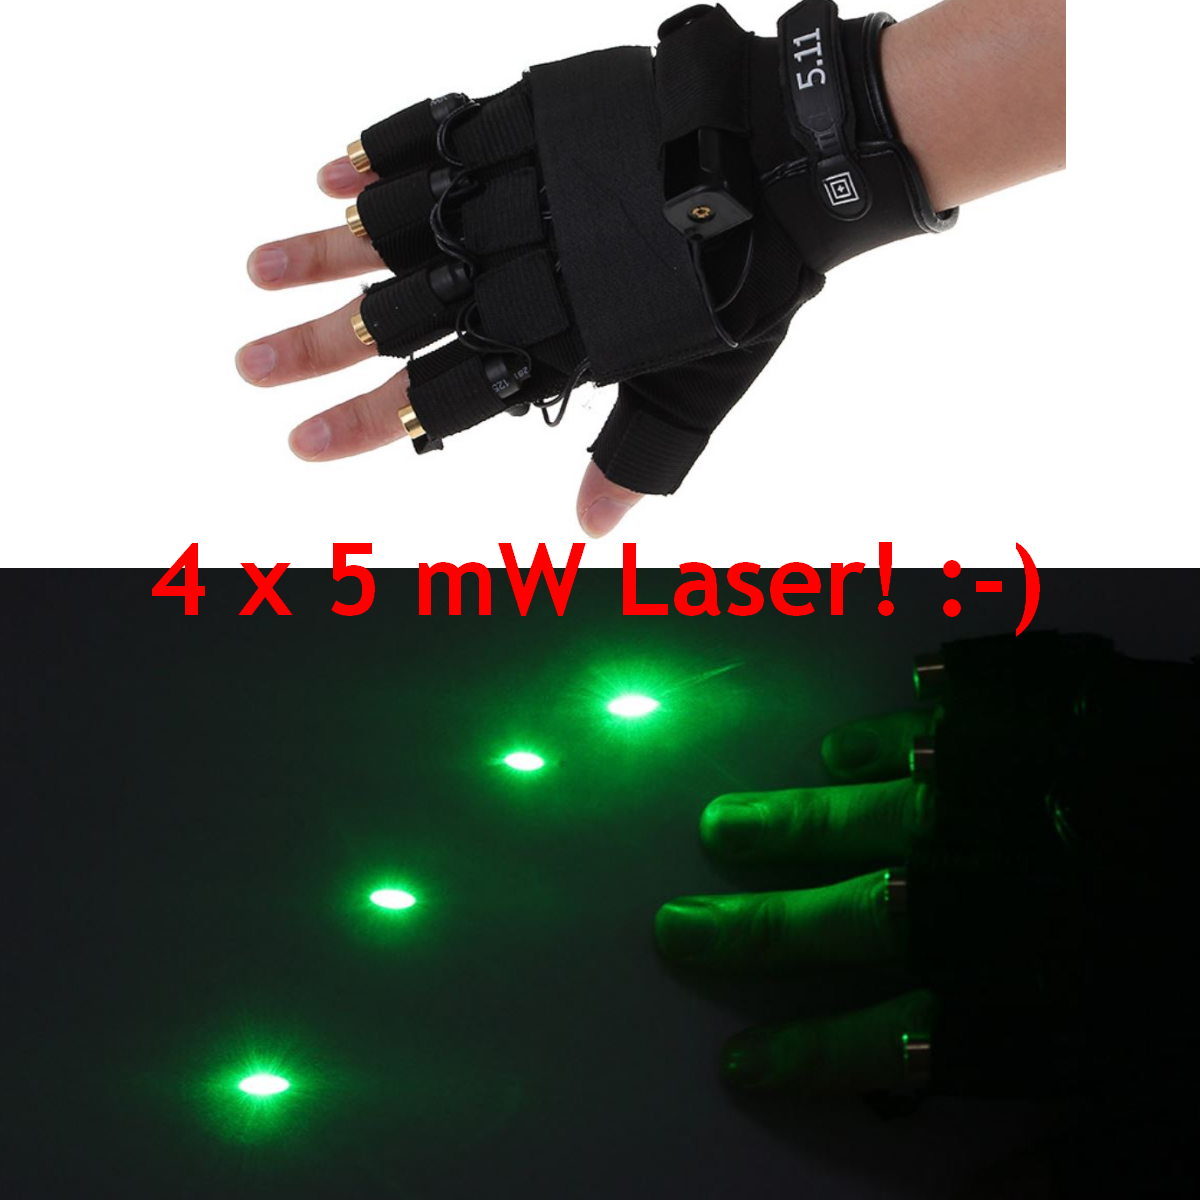 Laserhandschuh gefällig? 4 mal 5mW Laser im Handschuh haben nur Superhelden oder Gadget-Freaks! :-)